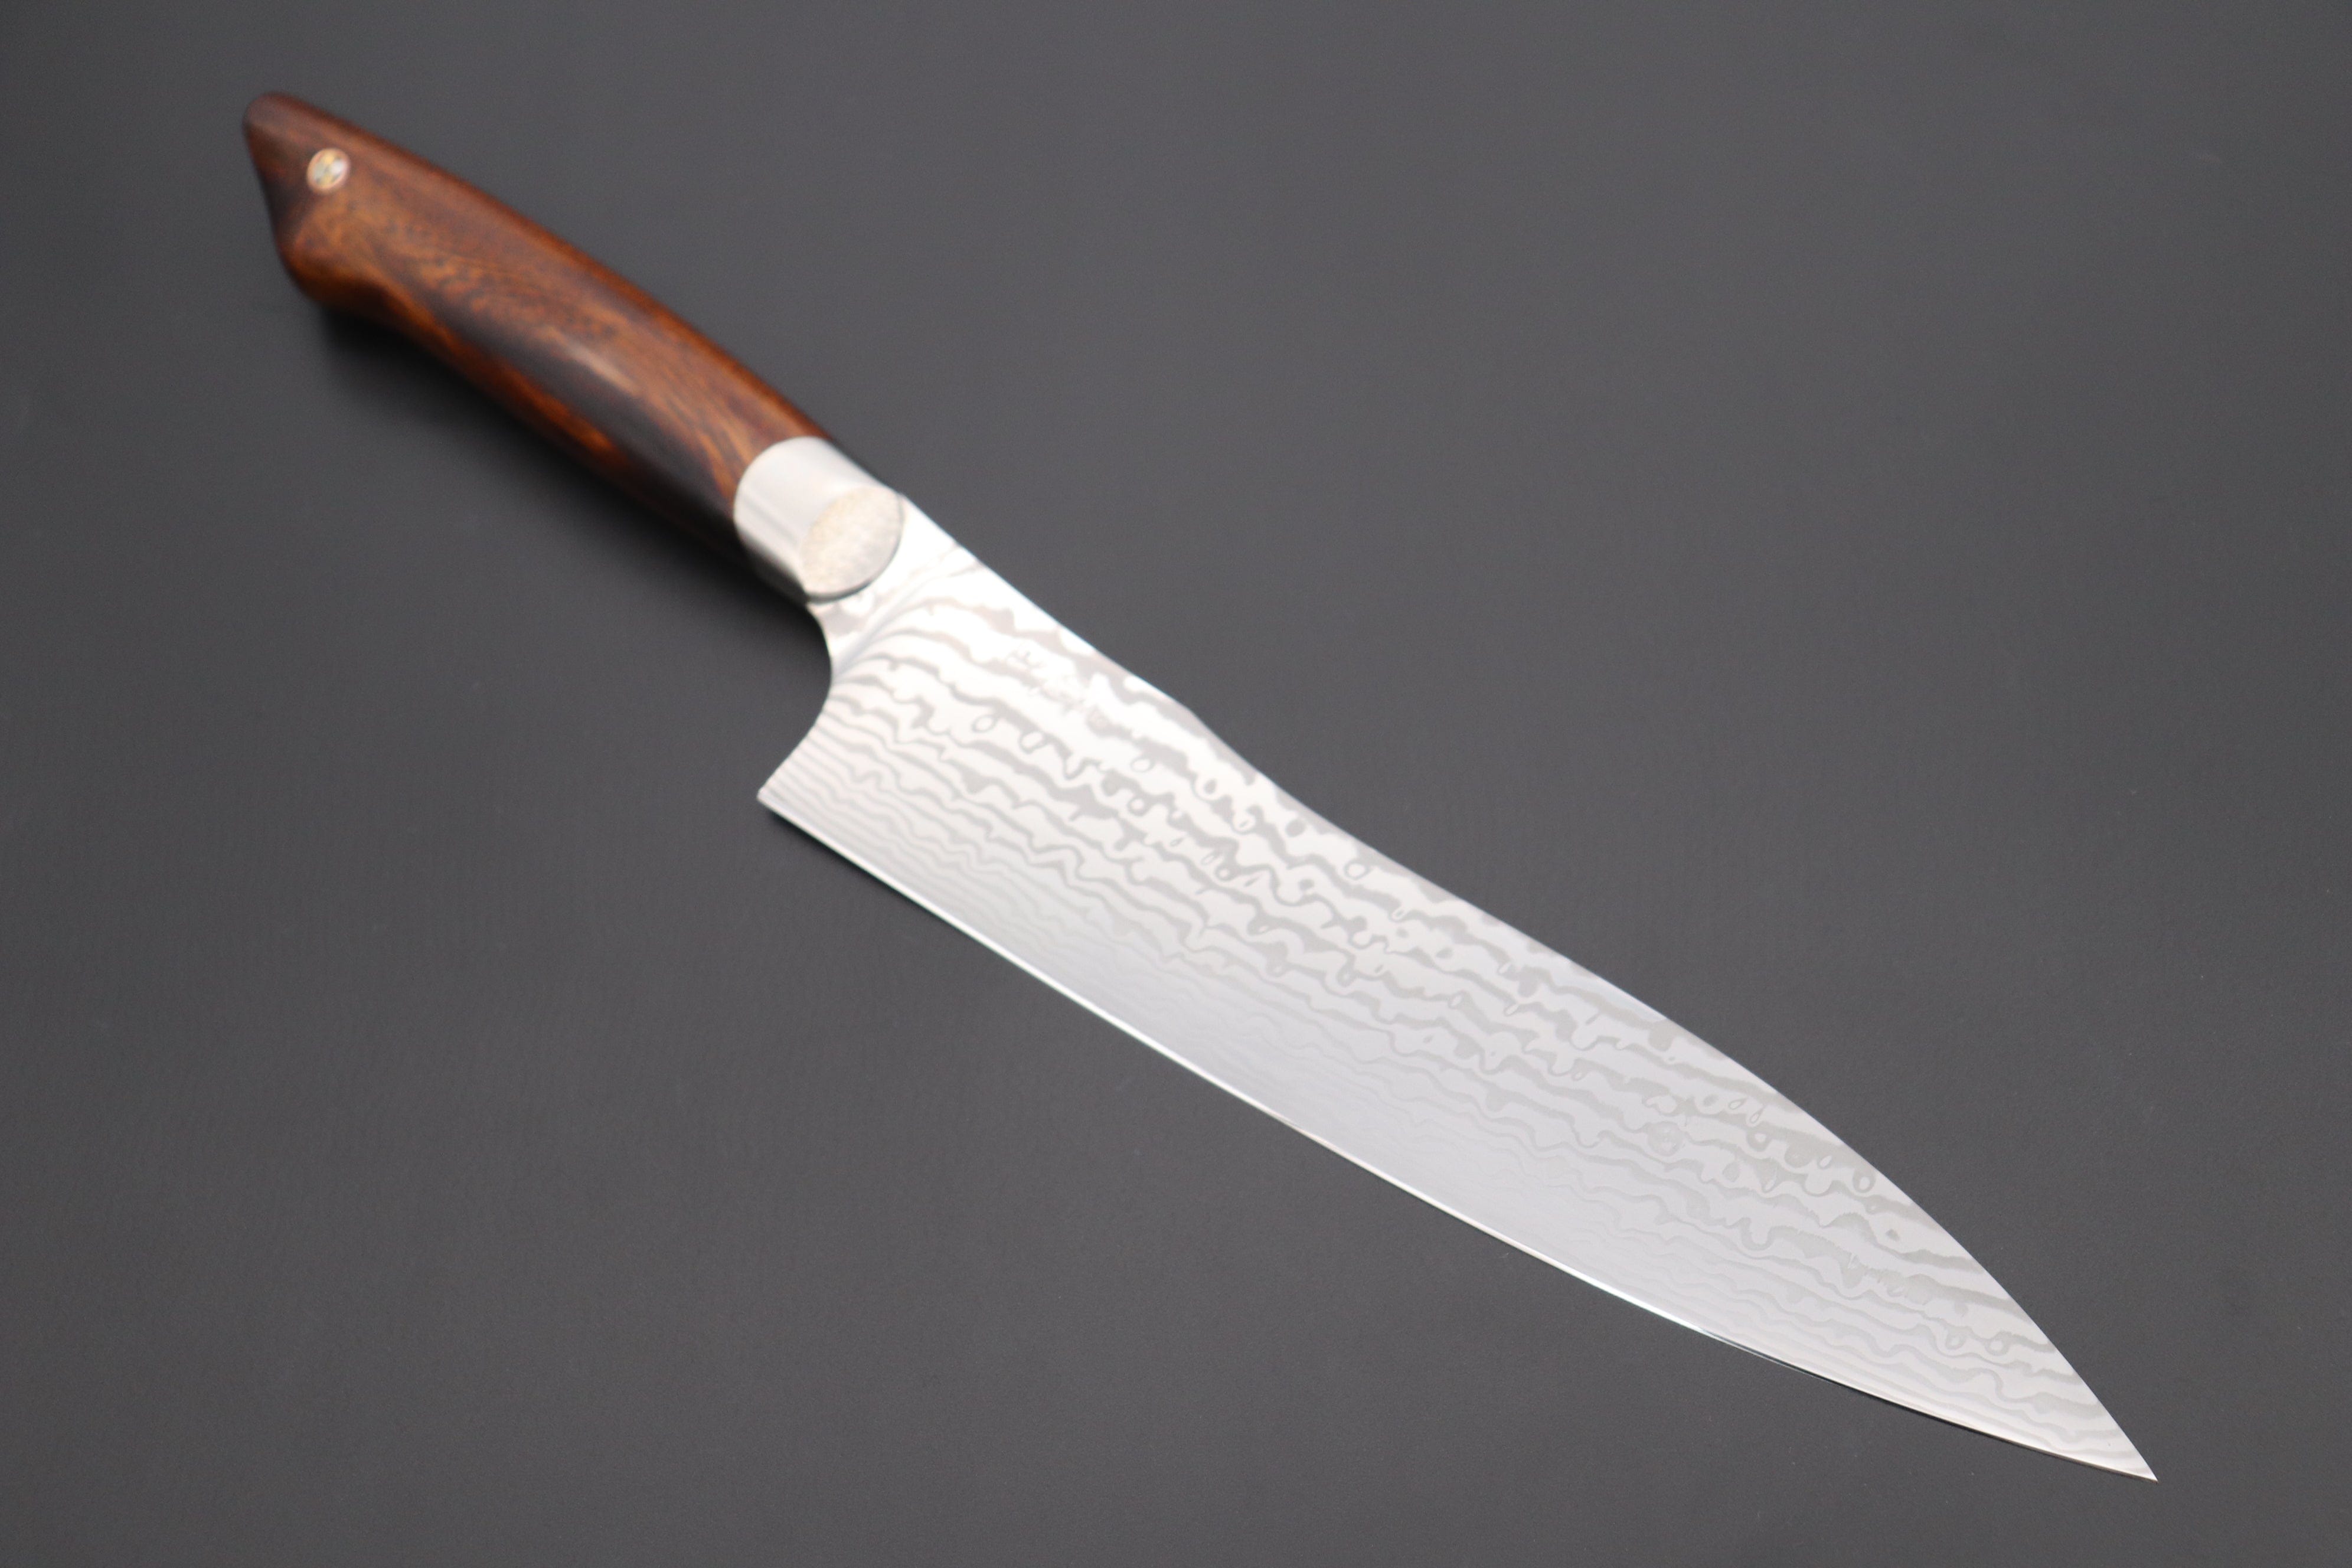 https://japanesechefsknife.com/cdn/shop/files/others-gyuto-custom-knife-maker-saito-hiroshi-custom-core-less-damascus-gyuto-190mm-7-4-inch-desert-ironwood-handle-sh-6-43309846757659.jpg?v=1698296614